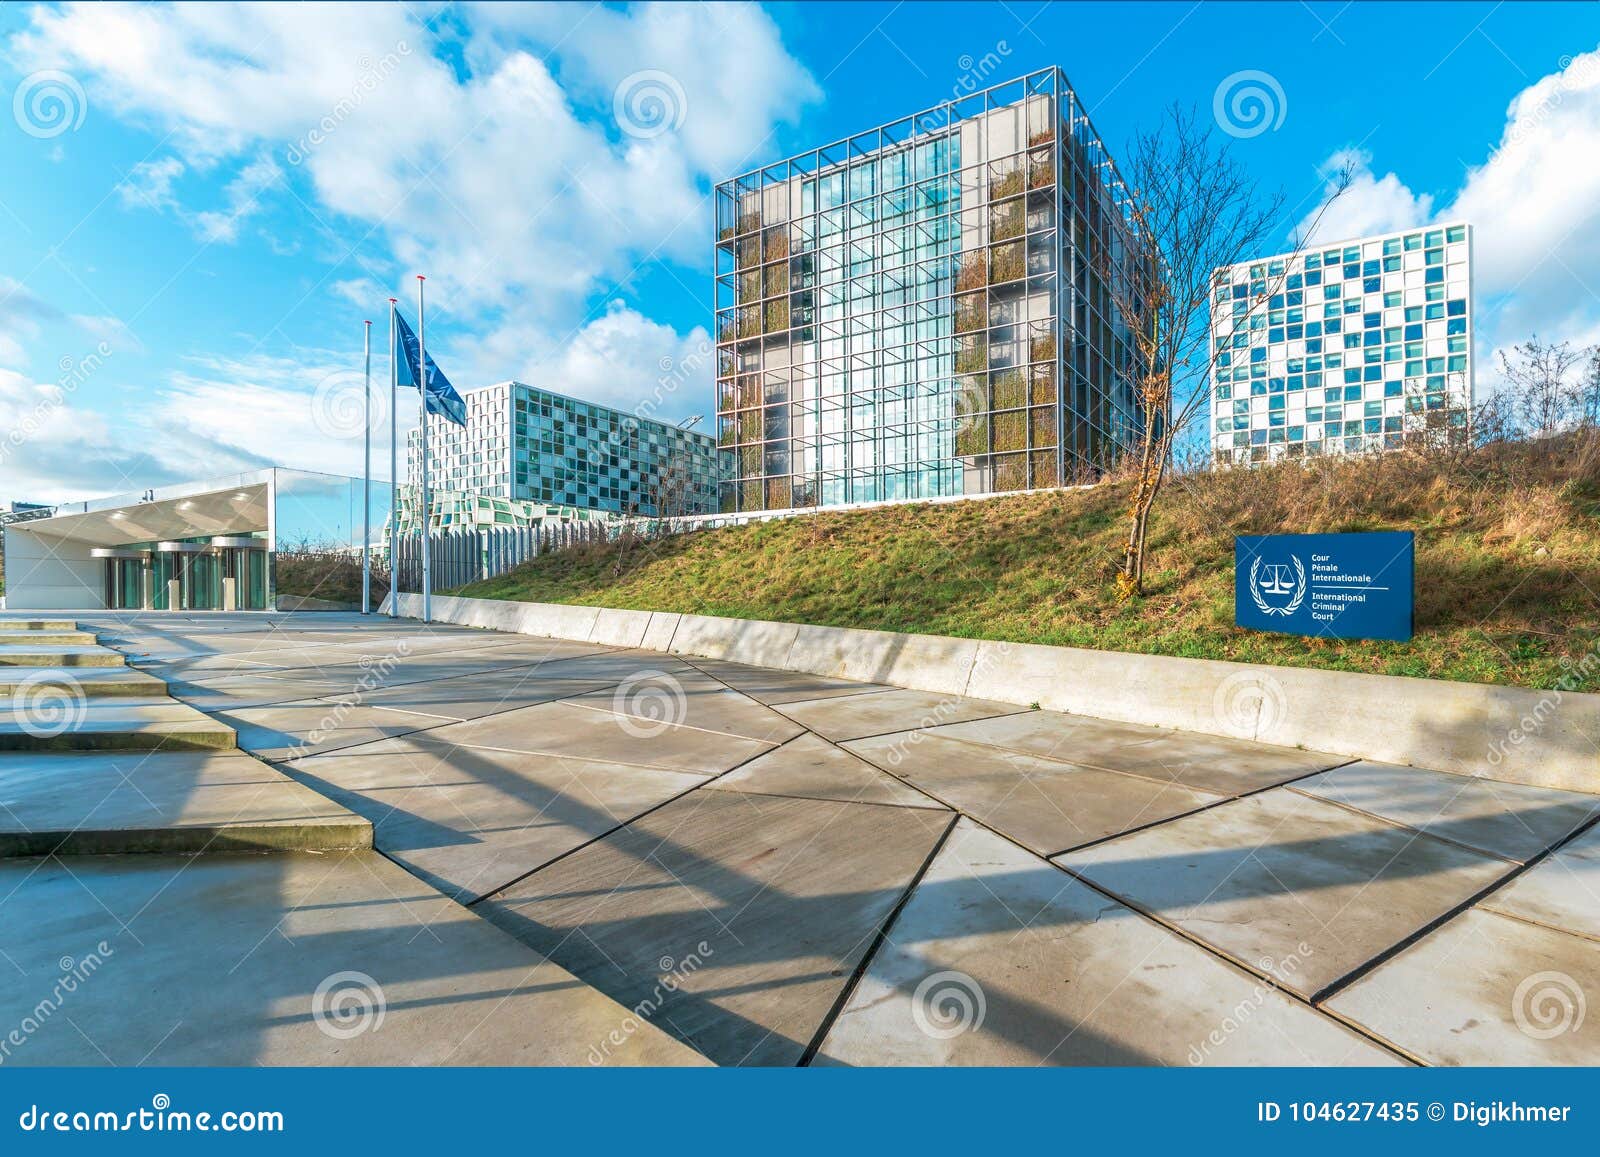 Międzynarodowe sąd karny przesłanki. HAGA, 24 2017 Listopad, - budynek Międzynarodowy sąd karny pod jasnym i błękitnym chmurnym niebem